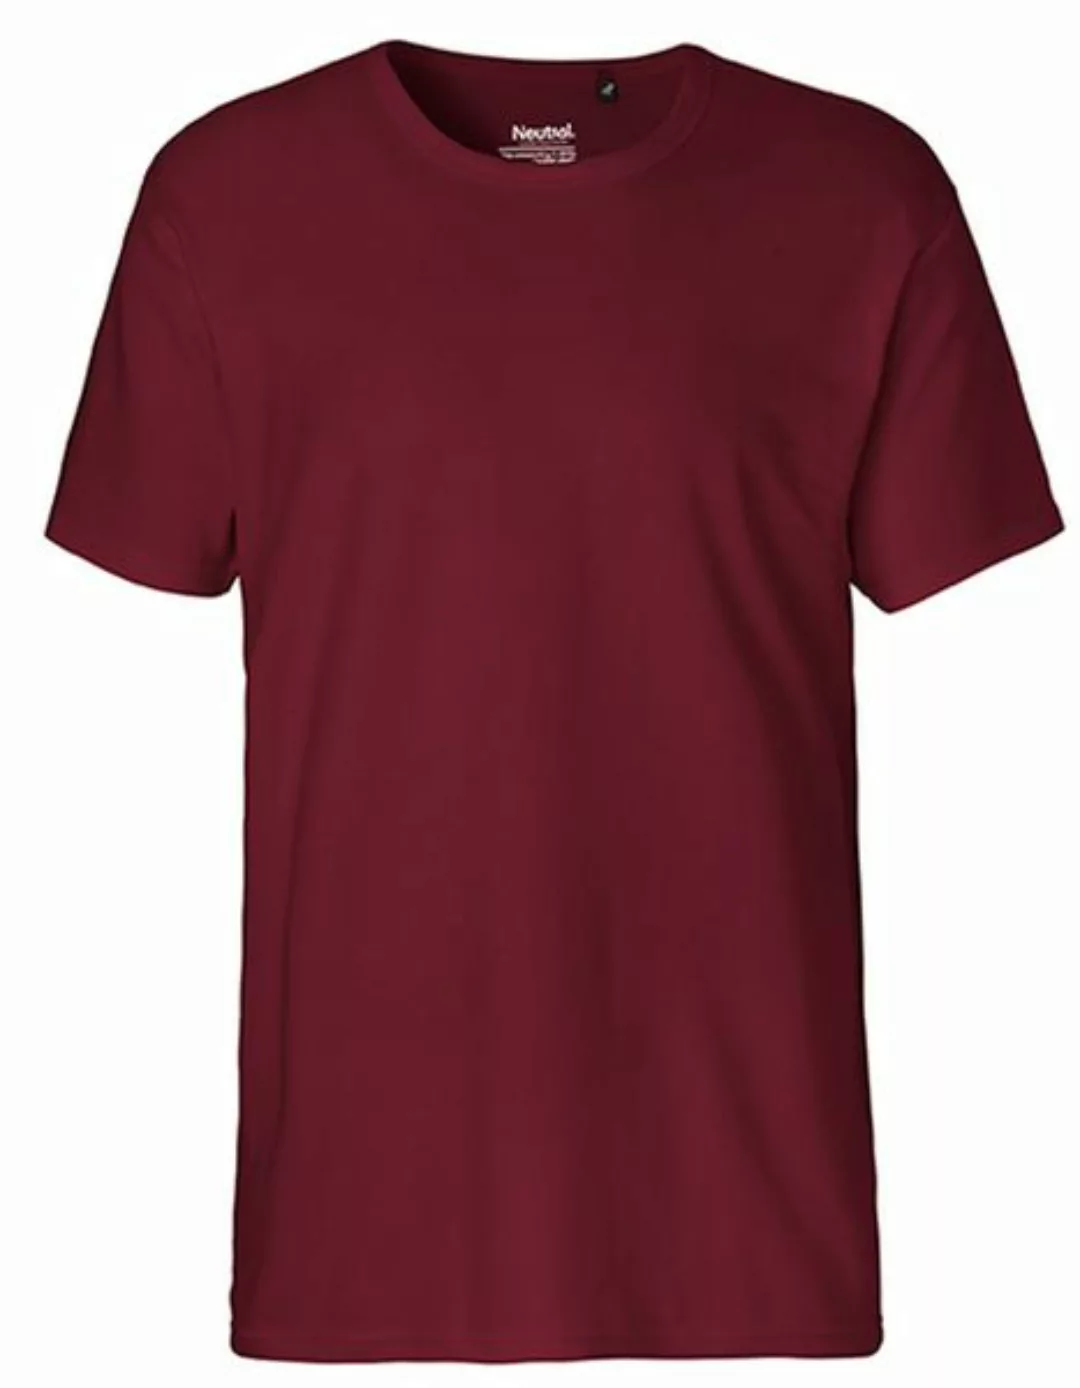 Unisex Interlock T-shirt Von Neutral Bio Baumwolle günstig online kaufen